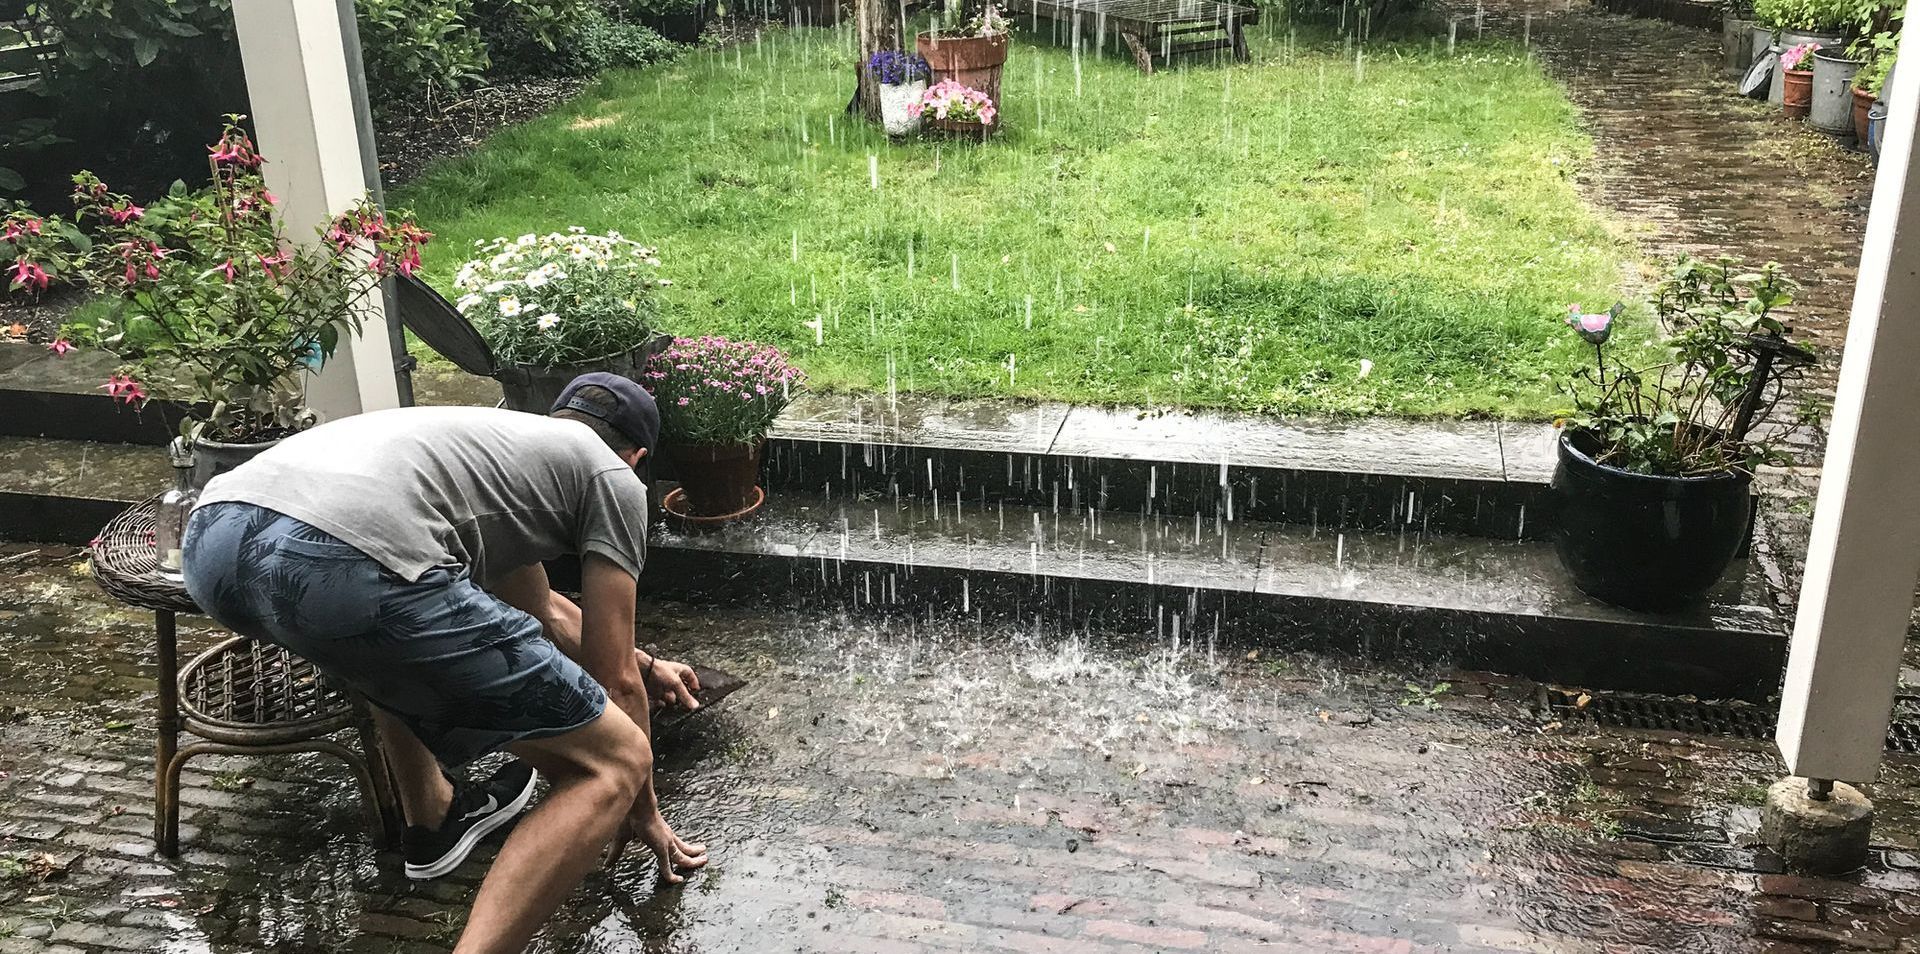 Man in achtertuin die regen opvangt / Regenwaterzuivering met Van Hall Innovations